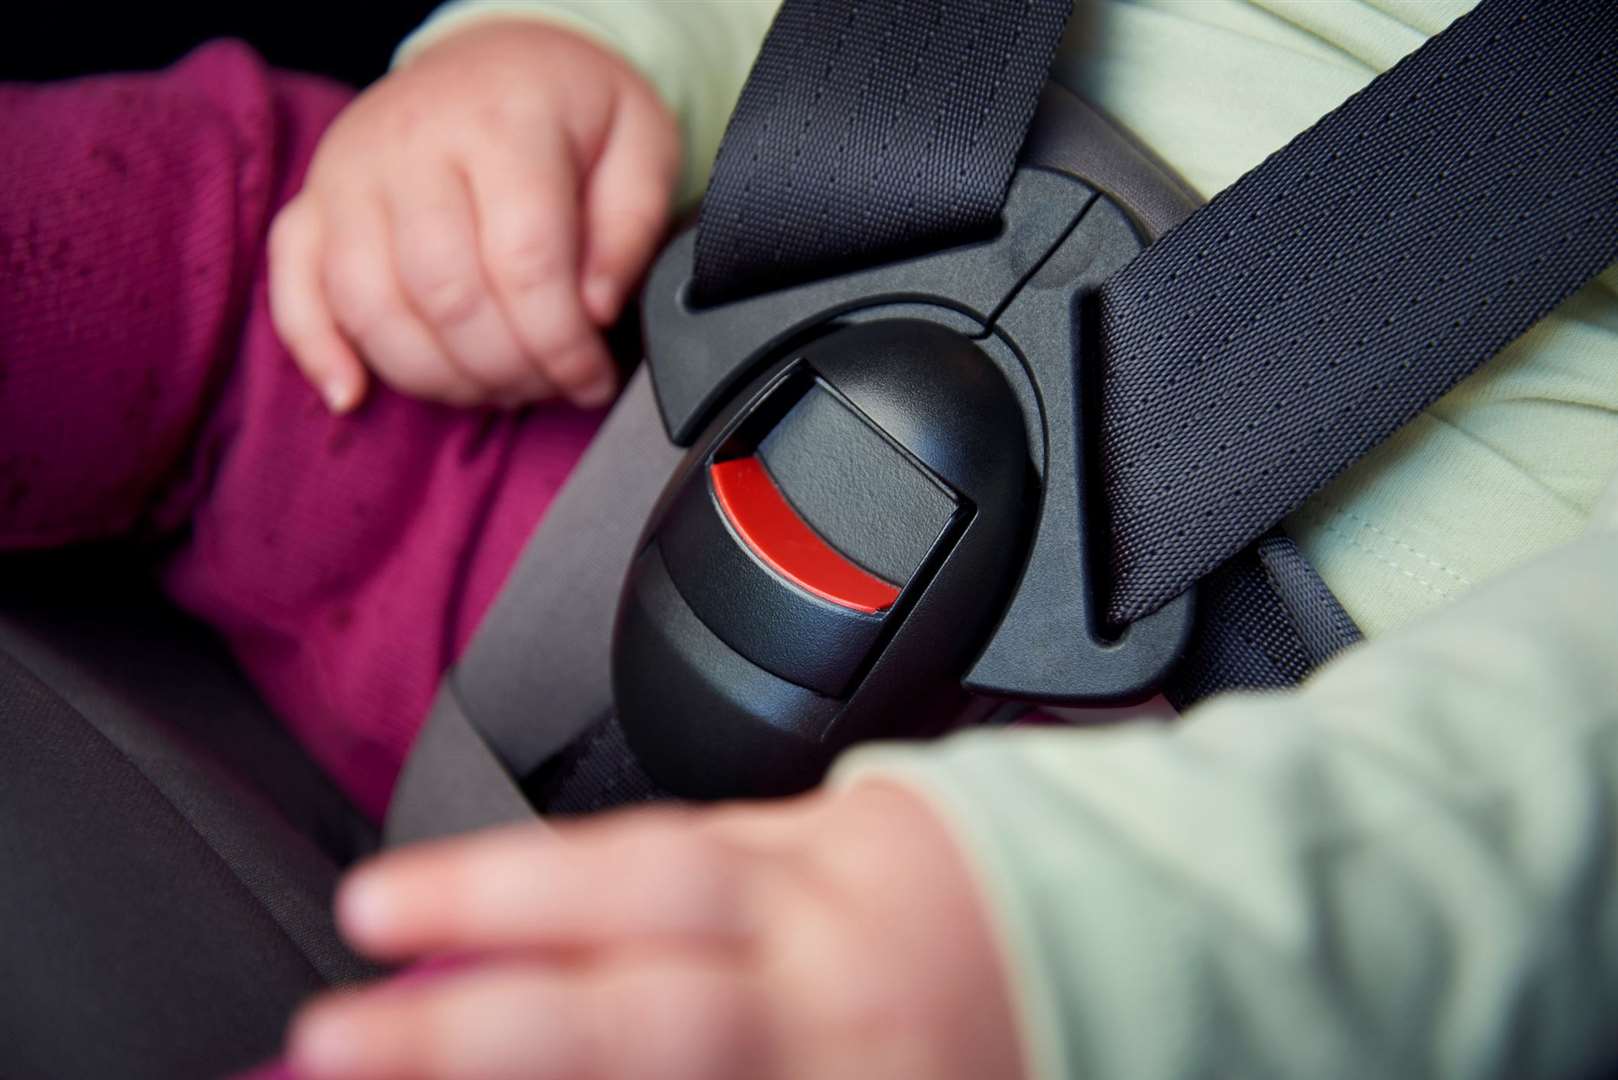 A children’s car seat is being recalled. Image: iStock/Martin Prescott